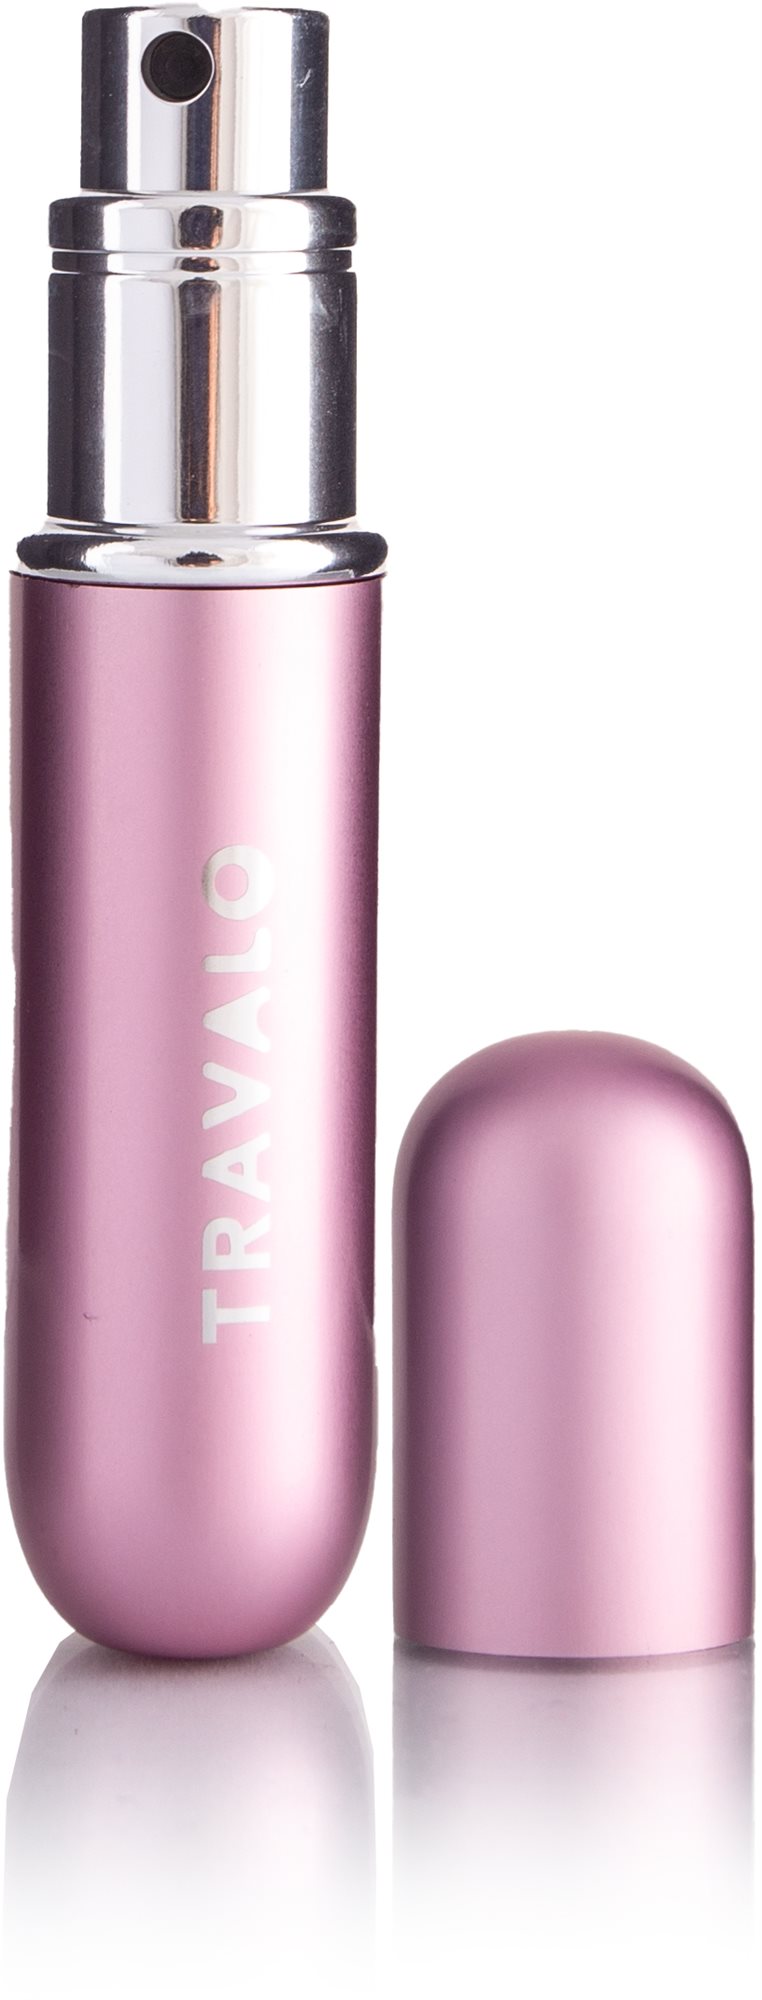 Travalo Classic HD - újratölthető flakon 5 ml (világos rózsaszín)